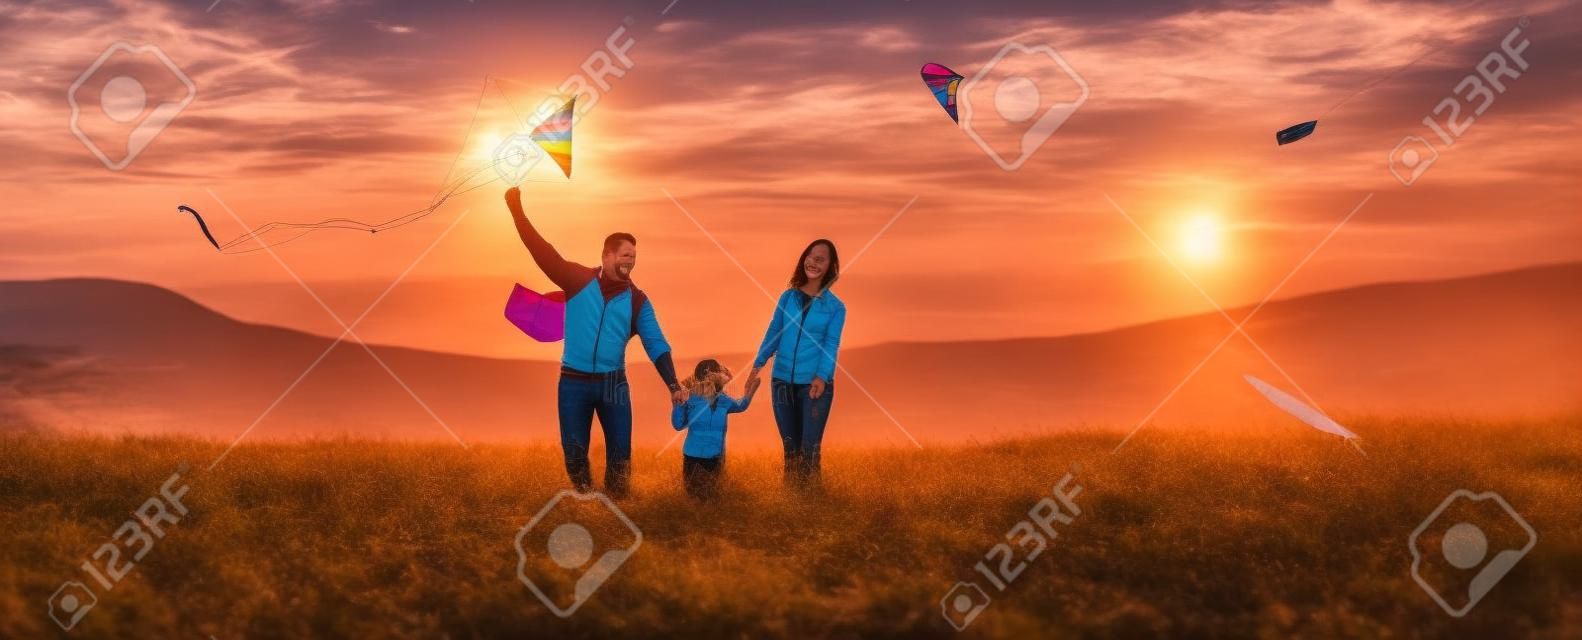 Glückliche Familienvater-, Mutter- und Kindertochter starten einen Drachen auf Natur bei Sonnenuntergang